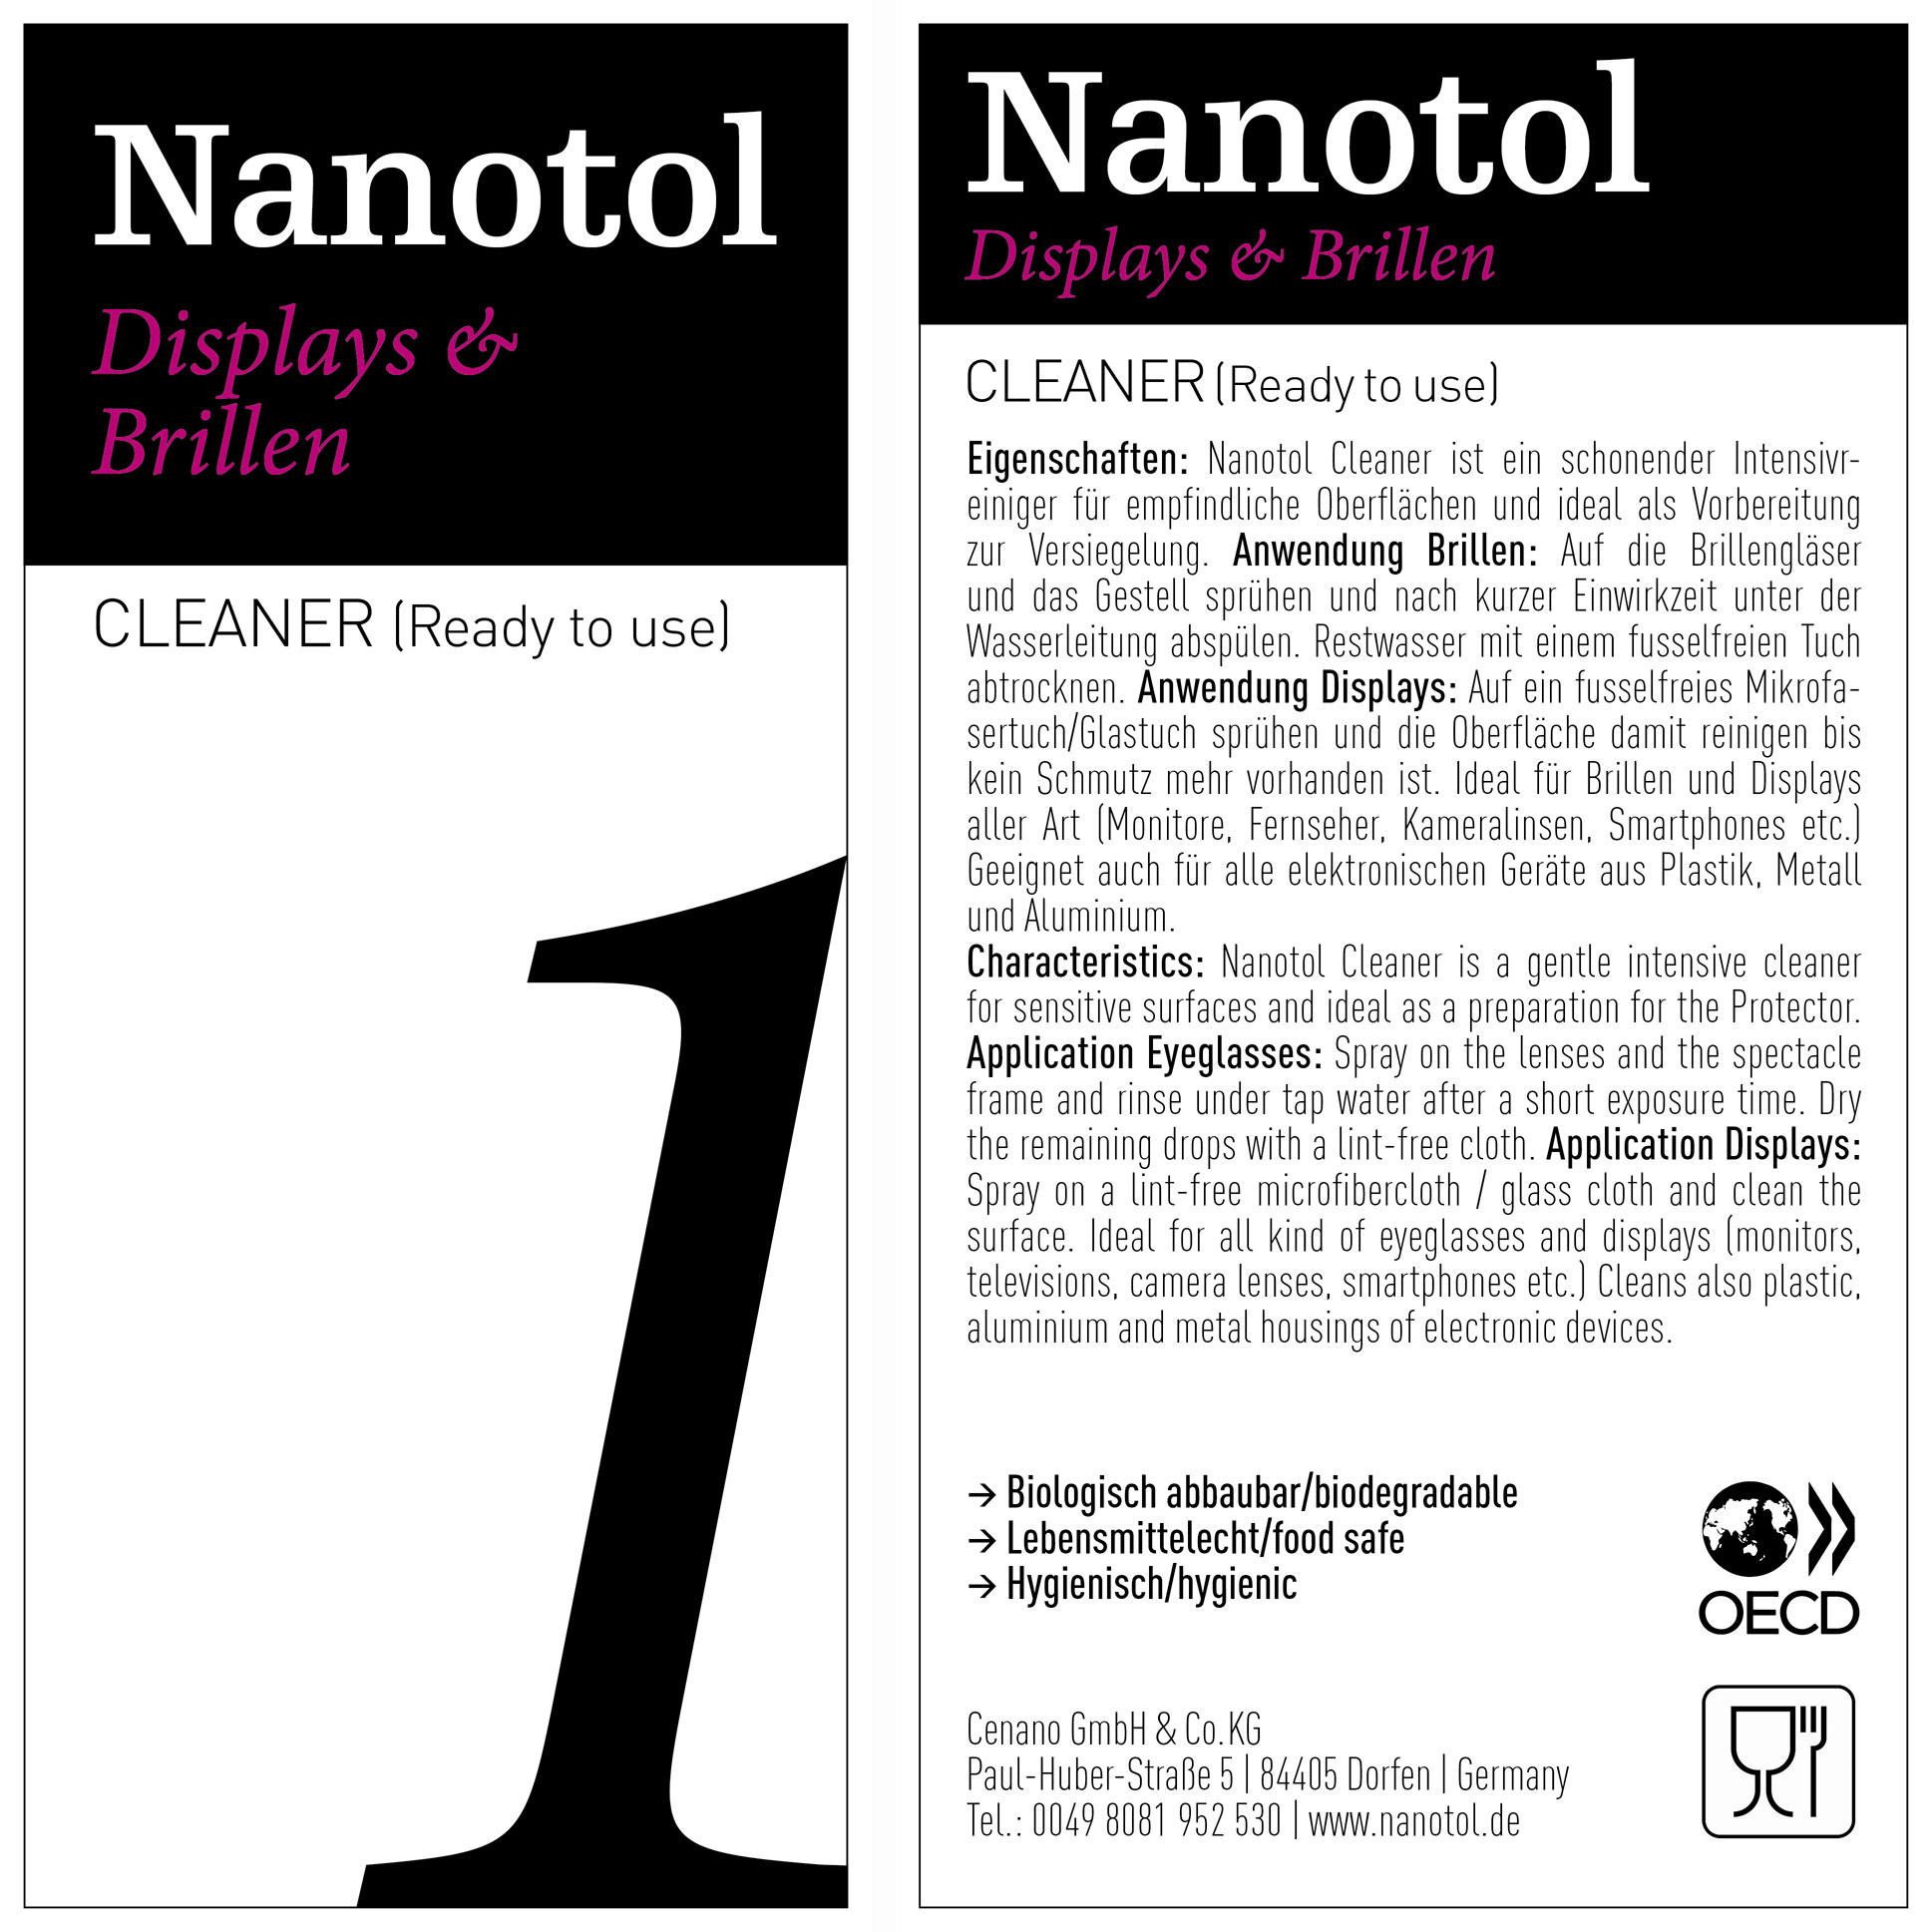 Etikett von Nanotol Displays und Brillen Cleaner